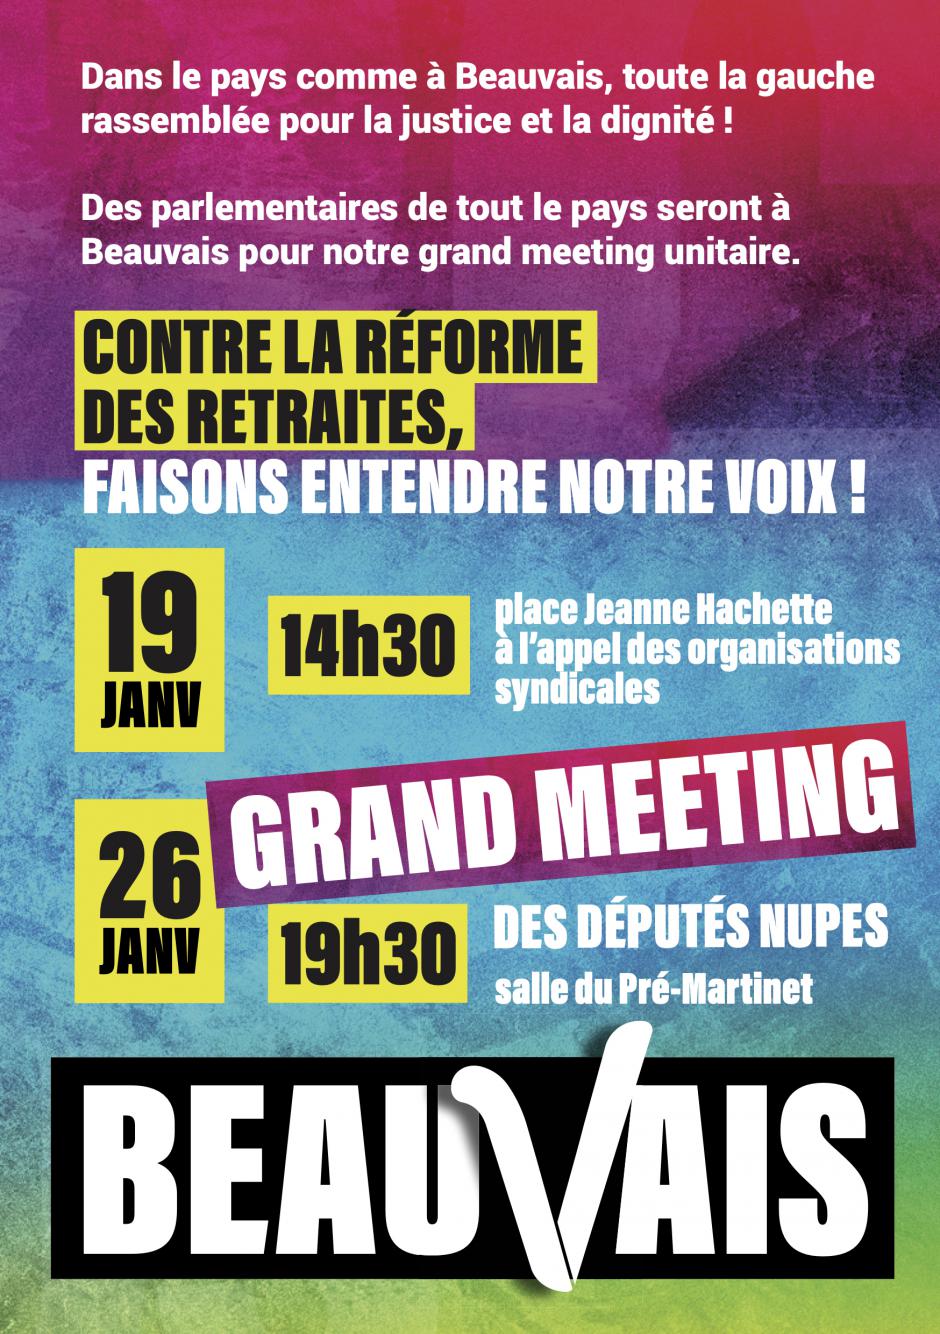 Flyer « Contre la réforme des retraites, faisons entendre notre voix » - Nupes Beauvais, 19 & 26 janvier 2023